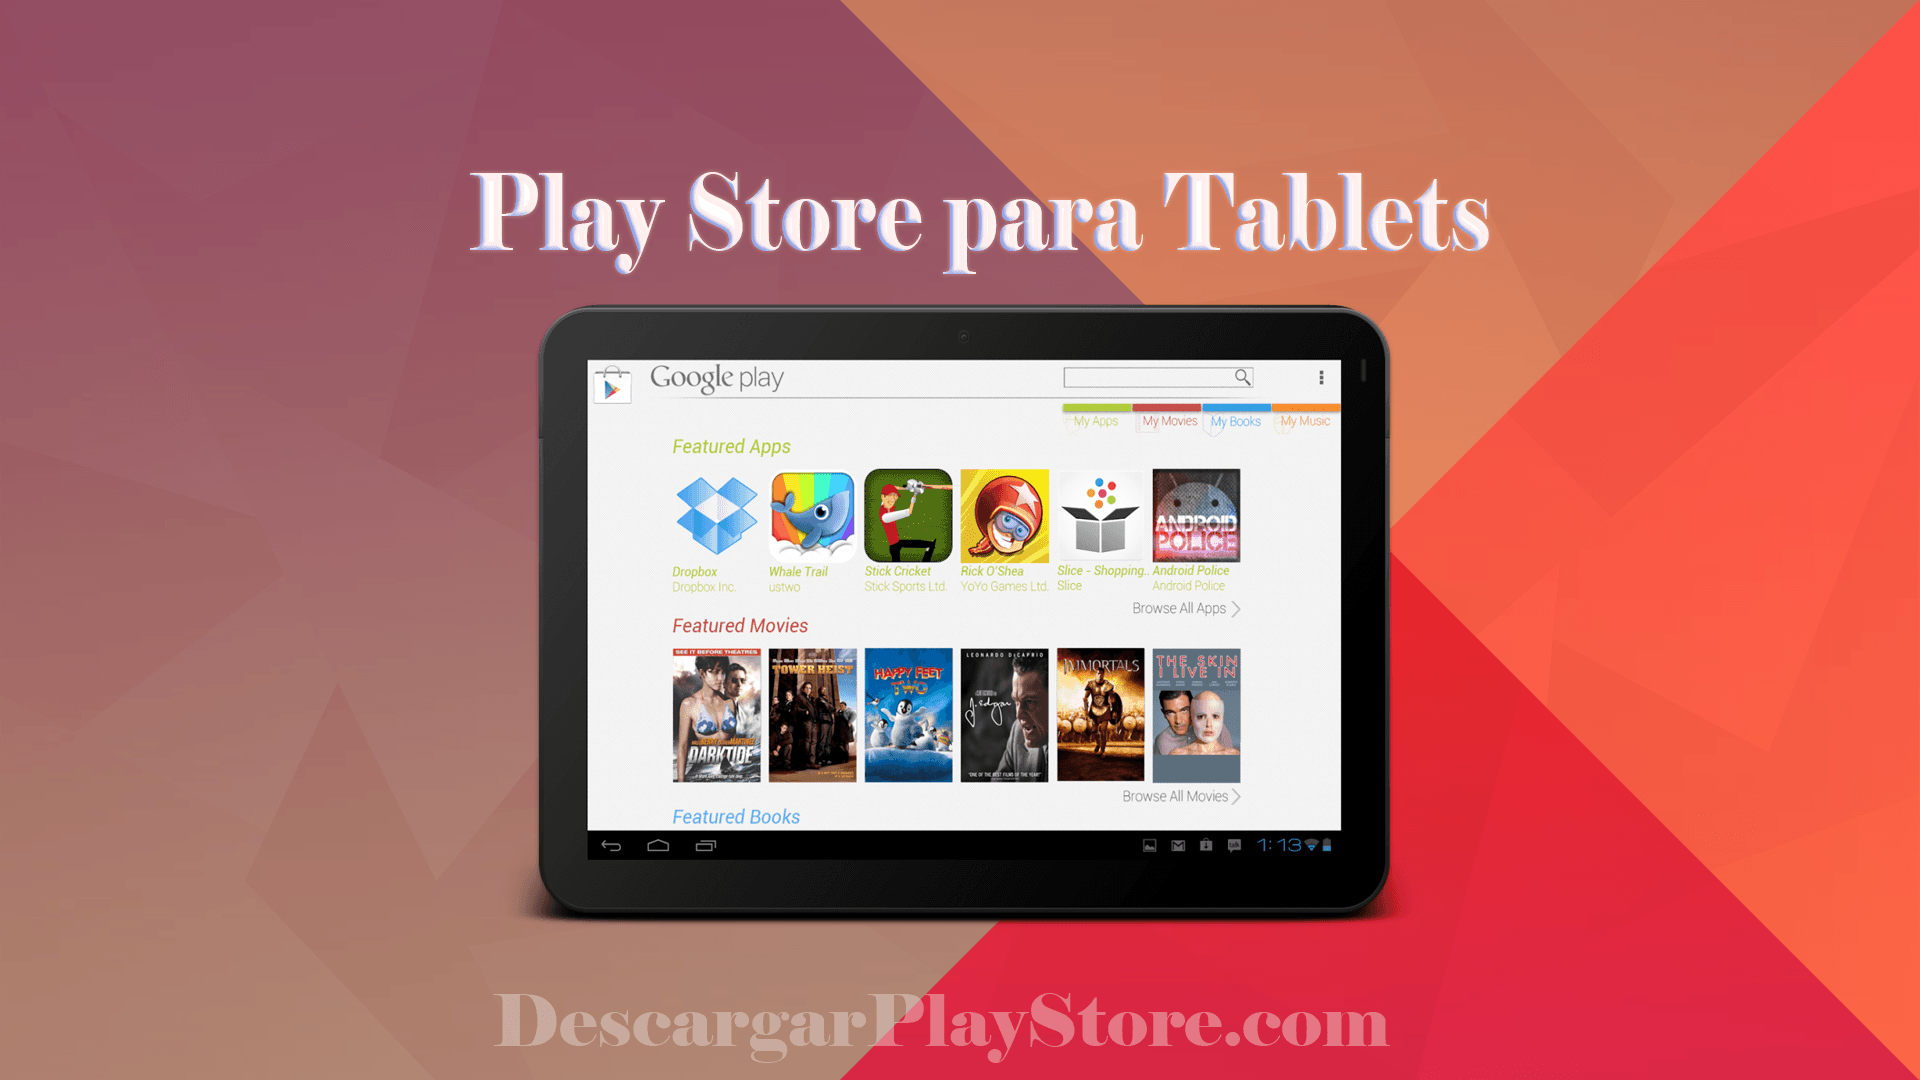 Play Store App para Tablet ¡Completamente Gratis Aquí! - Descargar Play Store Gratis Para Tablet